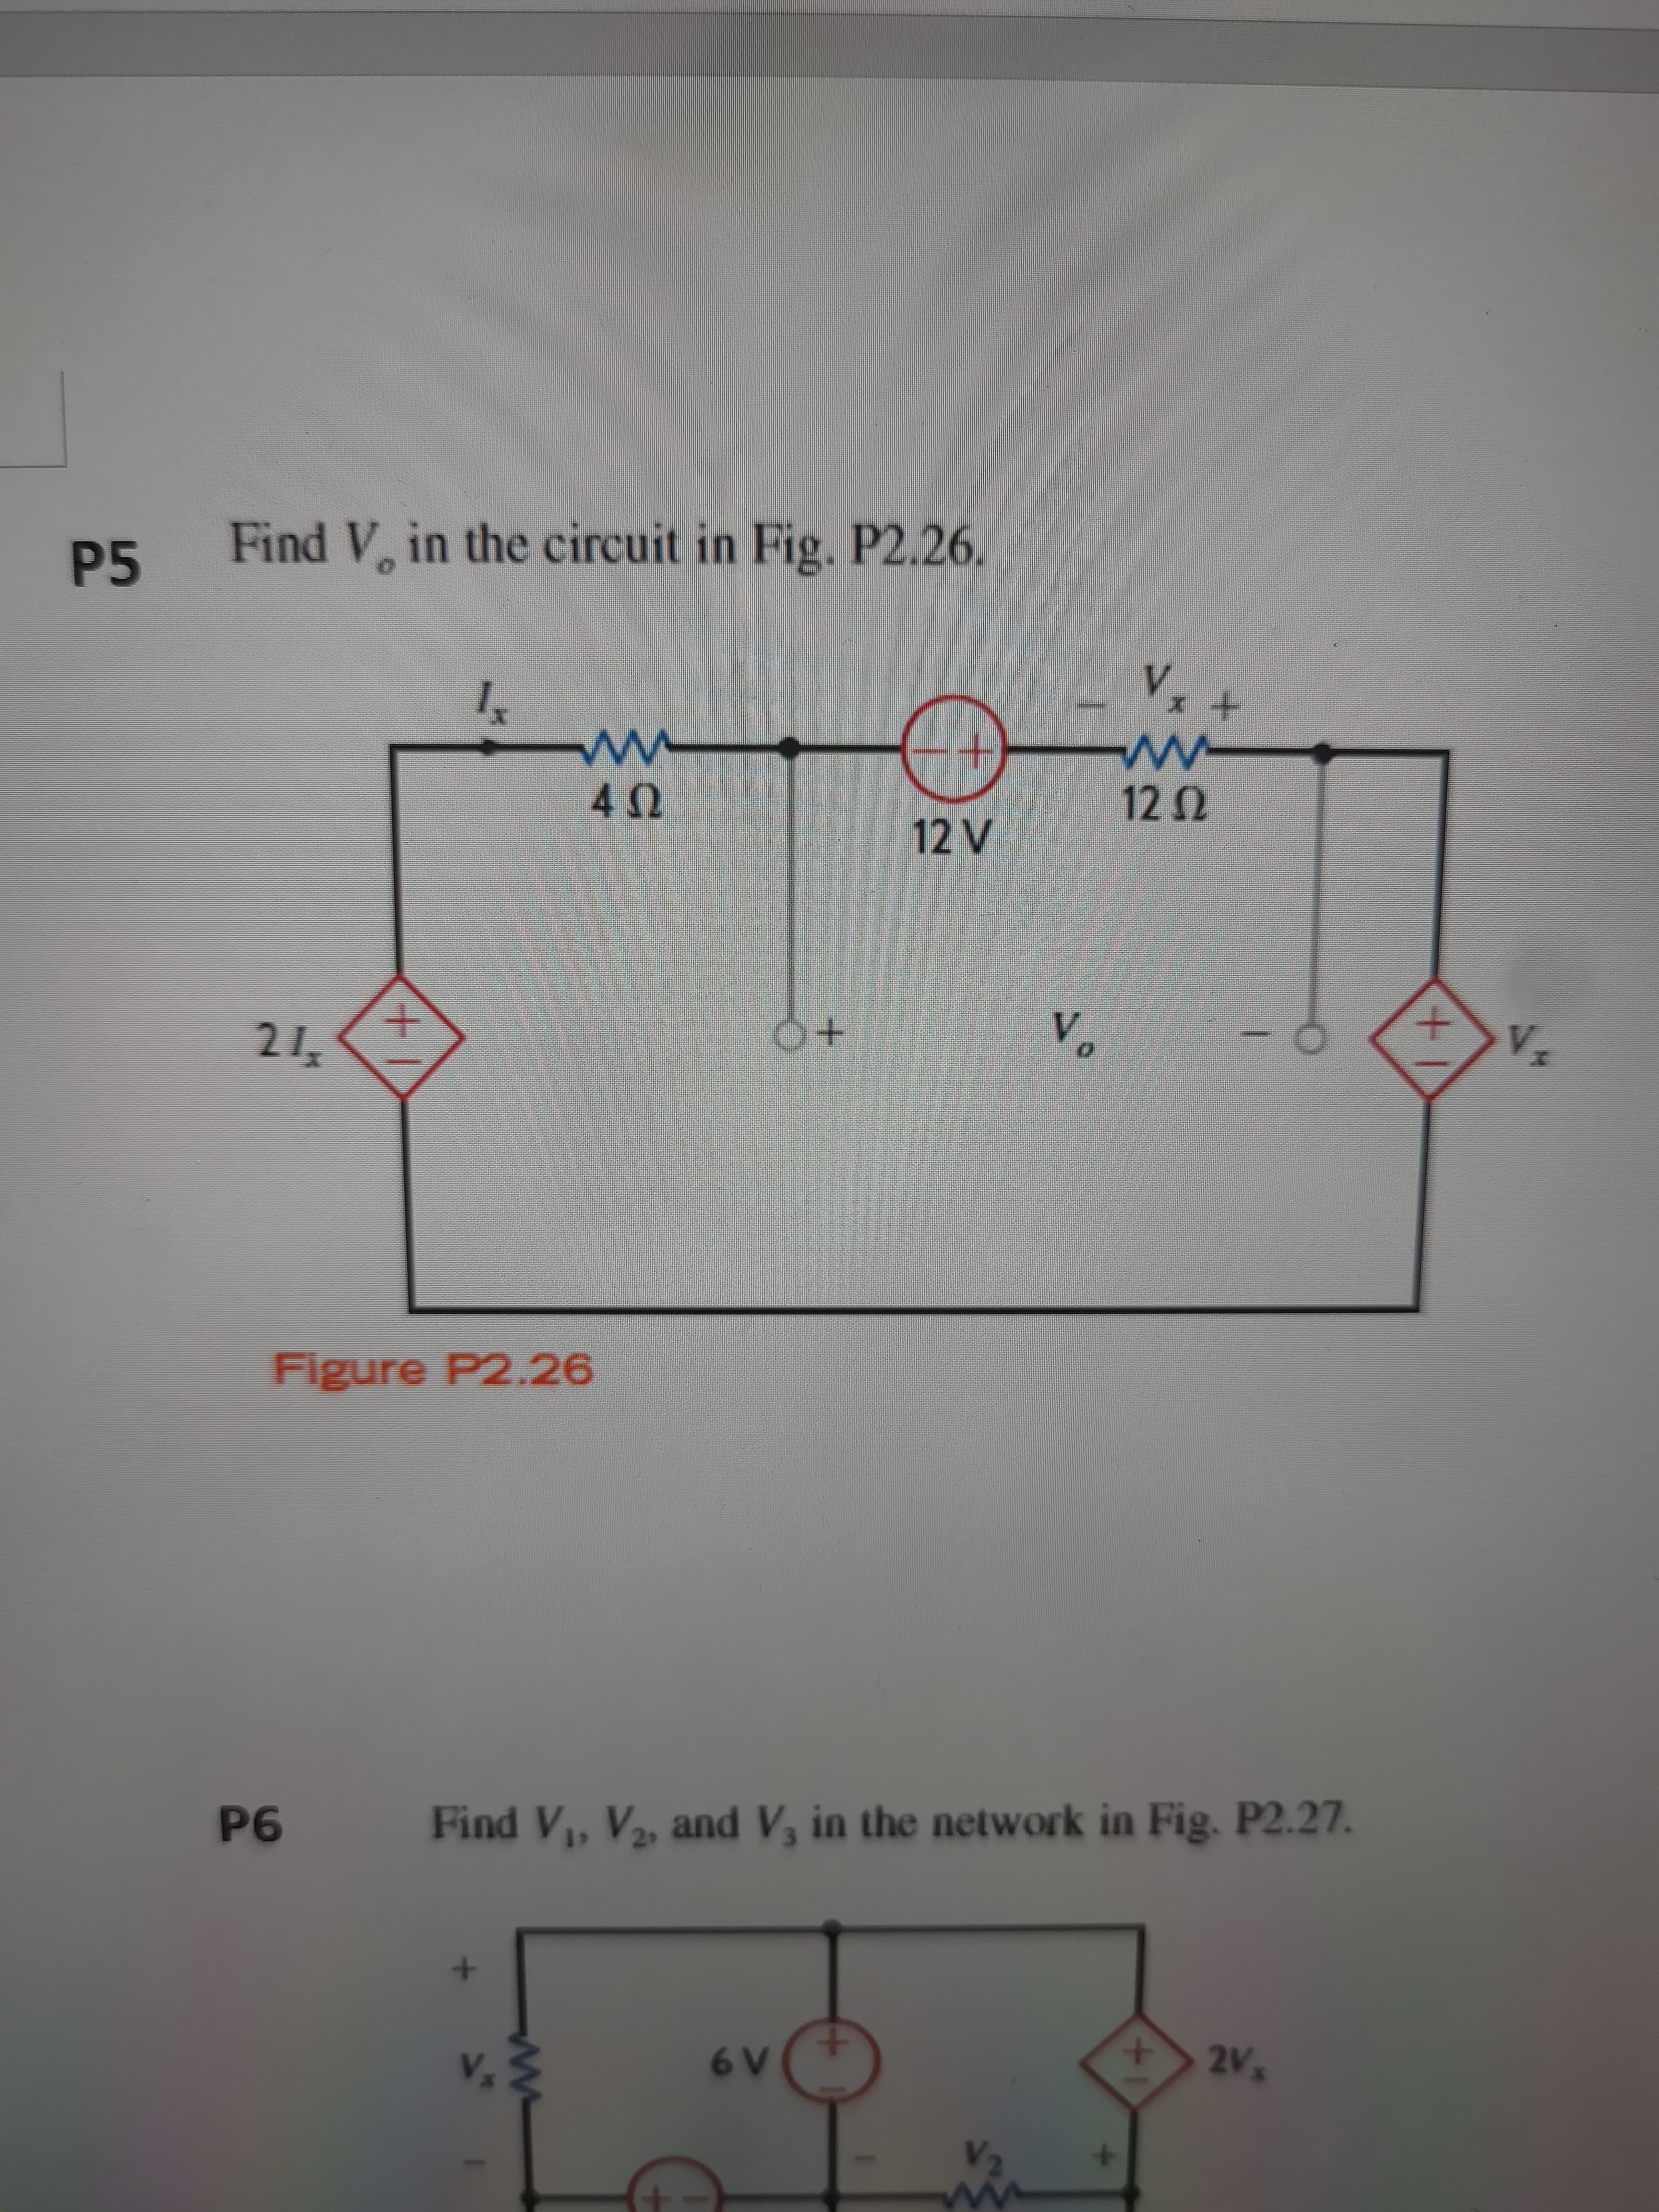 to
P5
Find V, in the circuit in Fig. P2.26.
Figure P2.26
40
9d
Find V, V2, and V, in the network in Fig. P2.27.
V.
v.
A9
